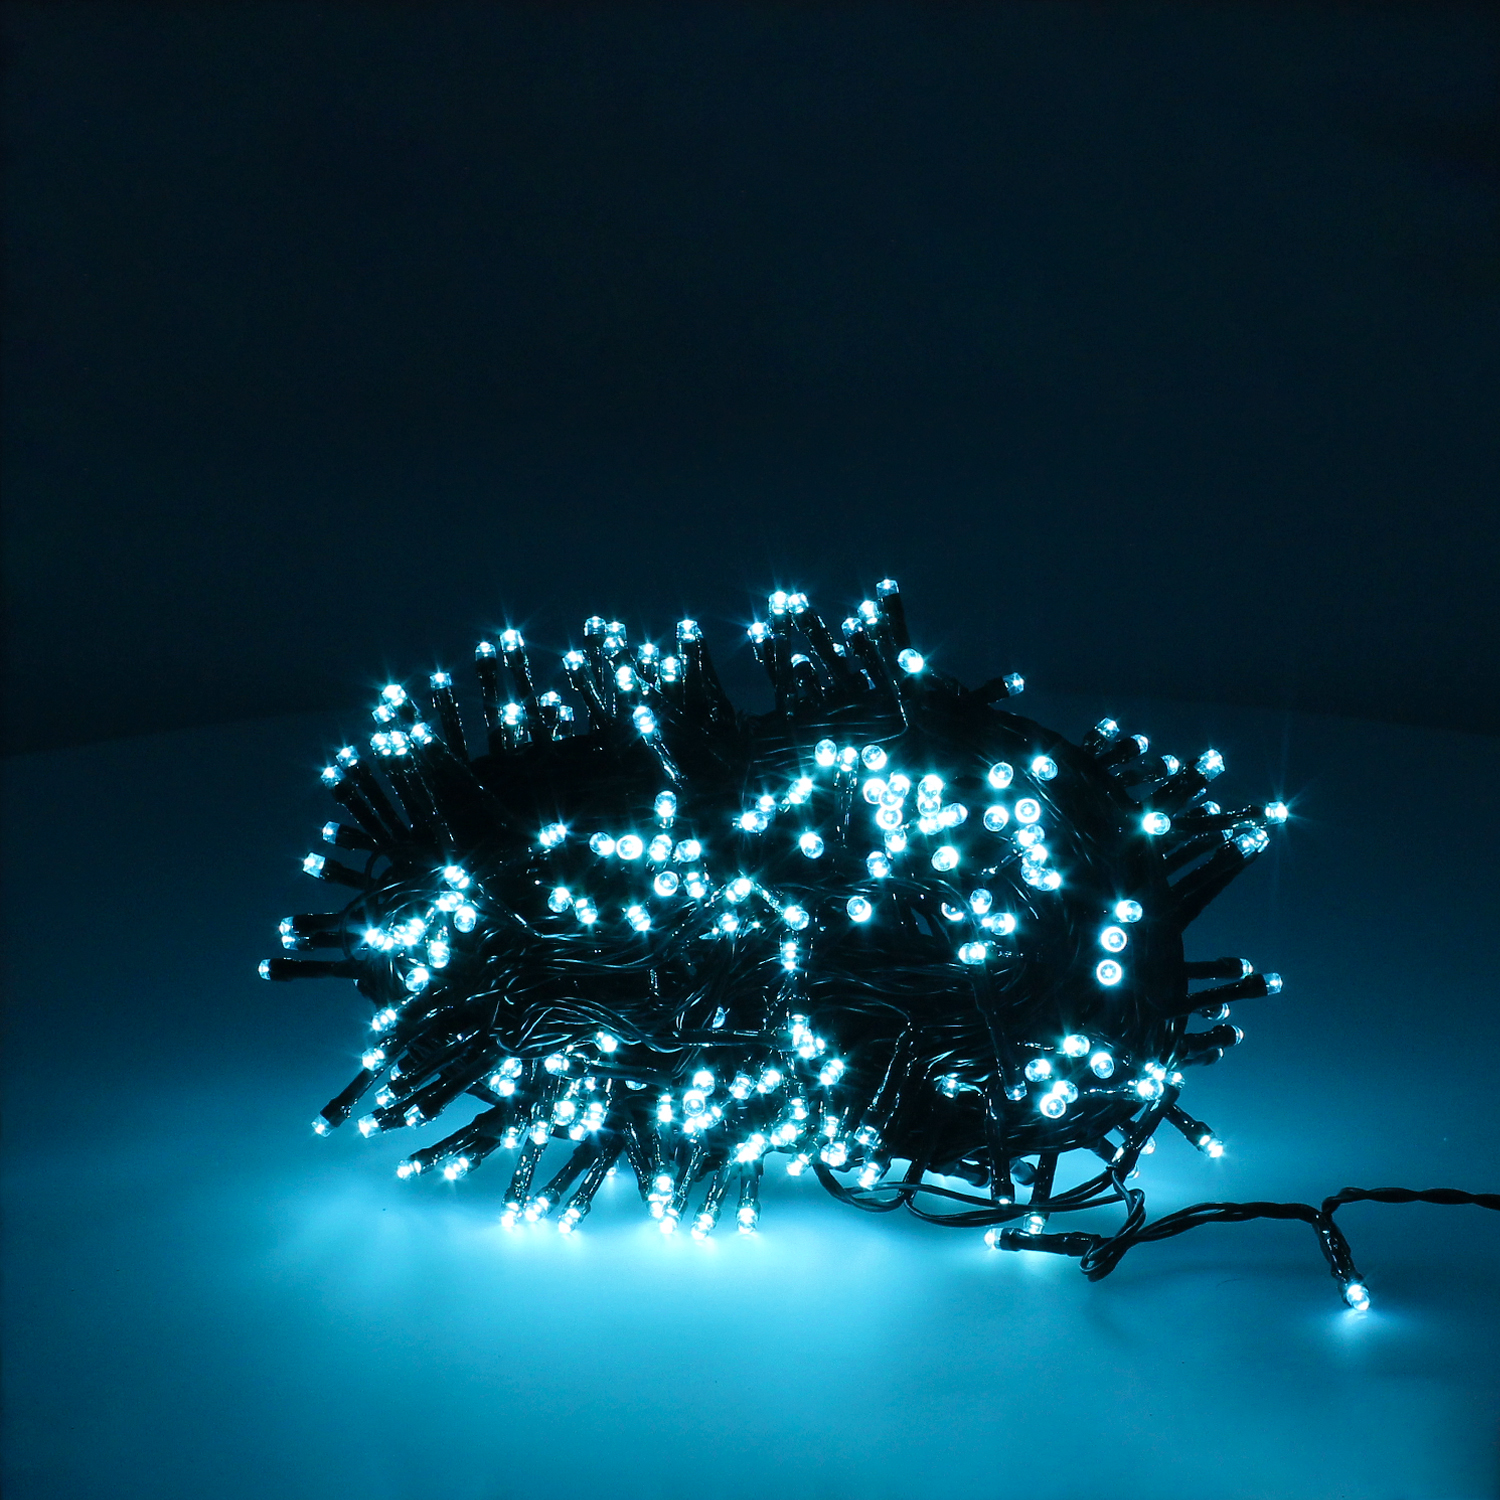 Luz Navidad Led Blanco Calido: 300 luces, 18m, perfectas para árboles de 150/180 cm. Potencia tu decoración con un resplandor acogedor. ¡Ilumina tu navidad!